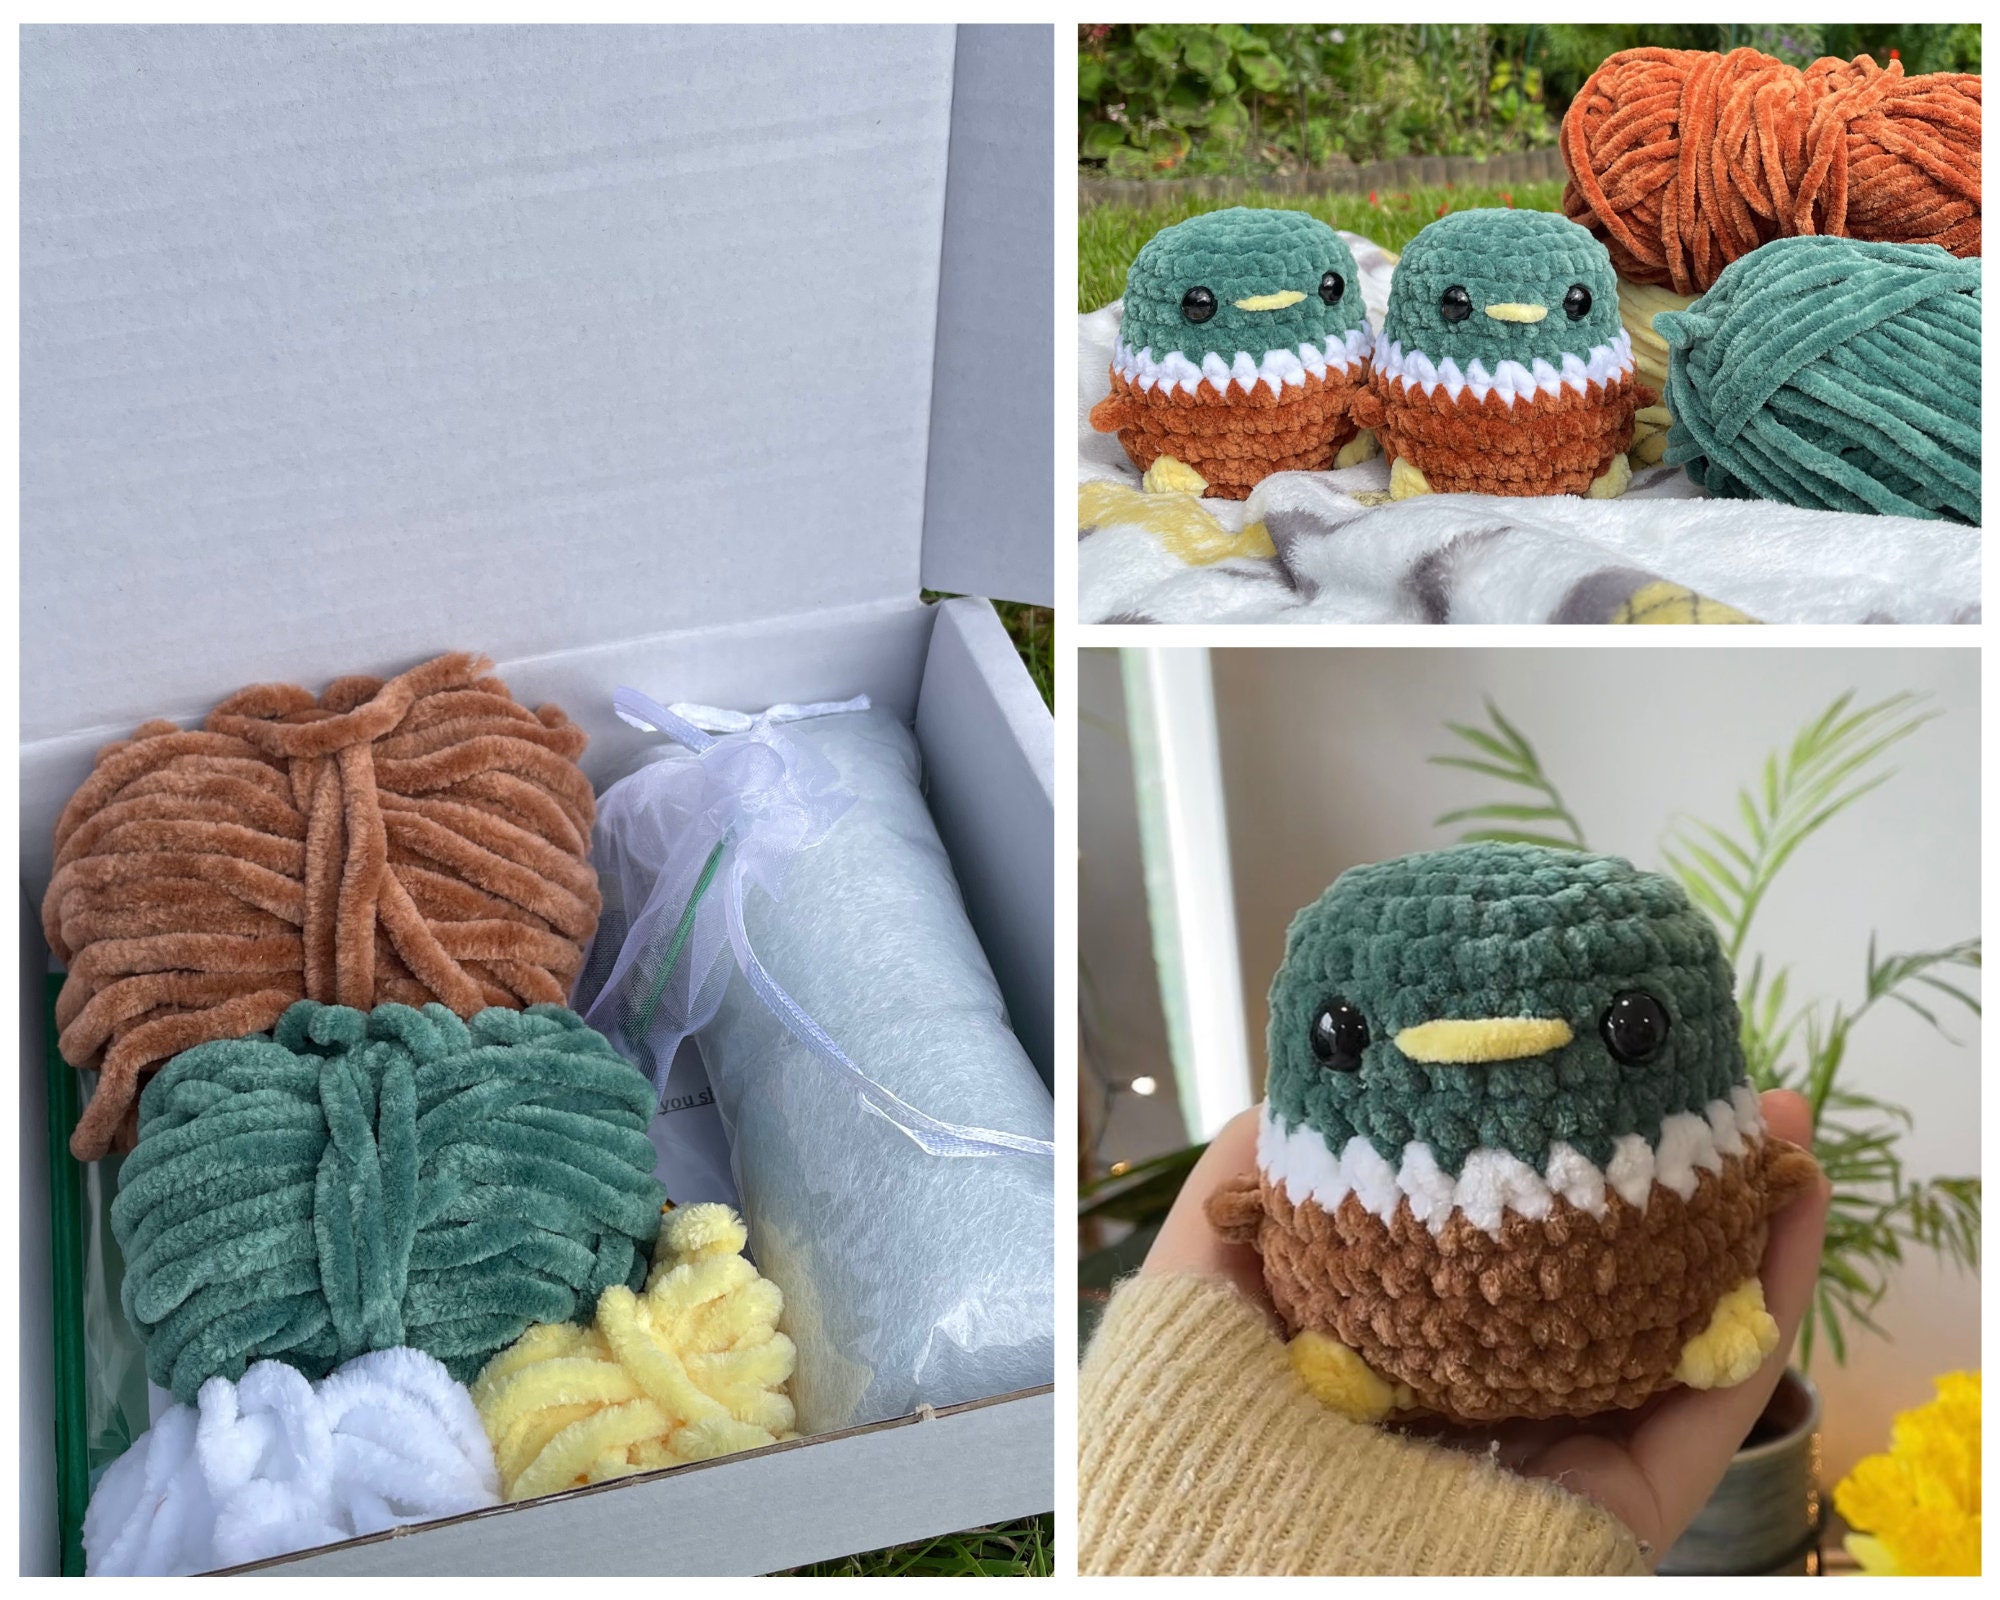 Crochet Kit Flower Garland, Beginner Crochet Kit With Yarn